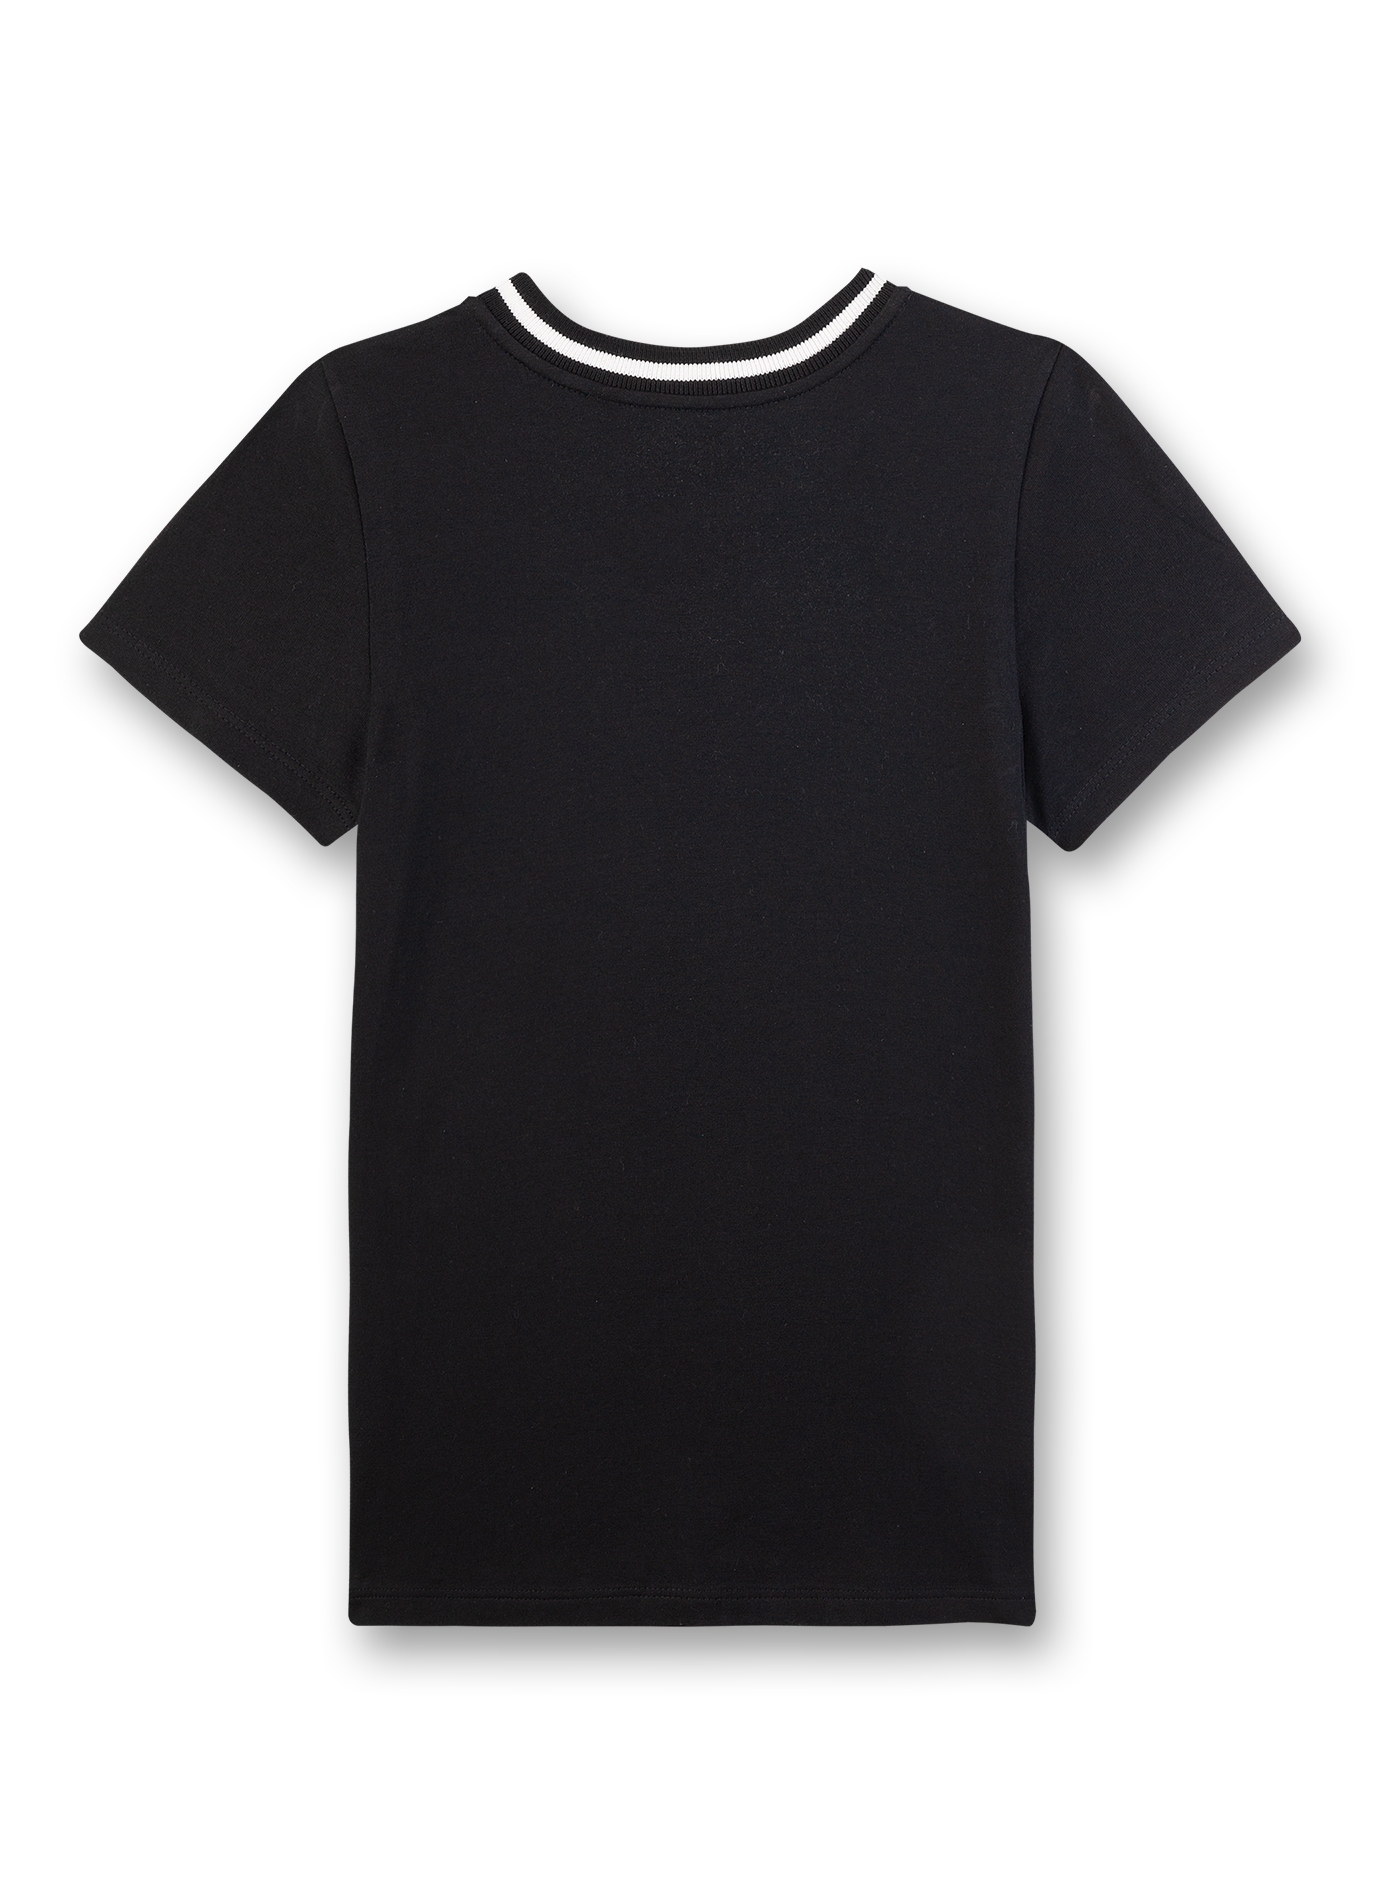 Mädchen T-Shirt Schwarz Athleisure